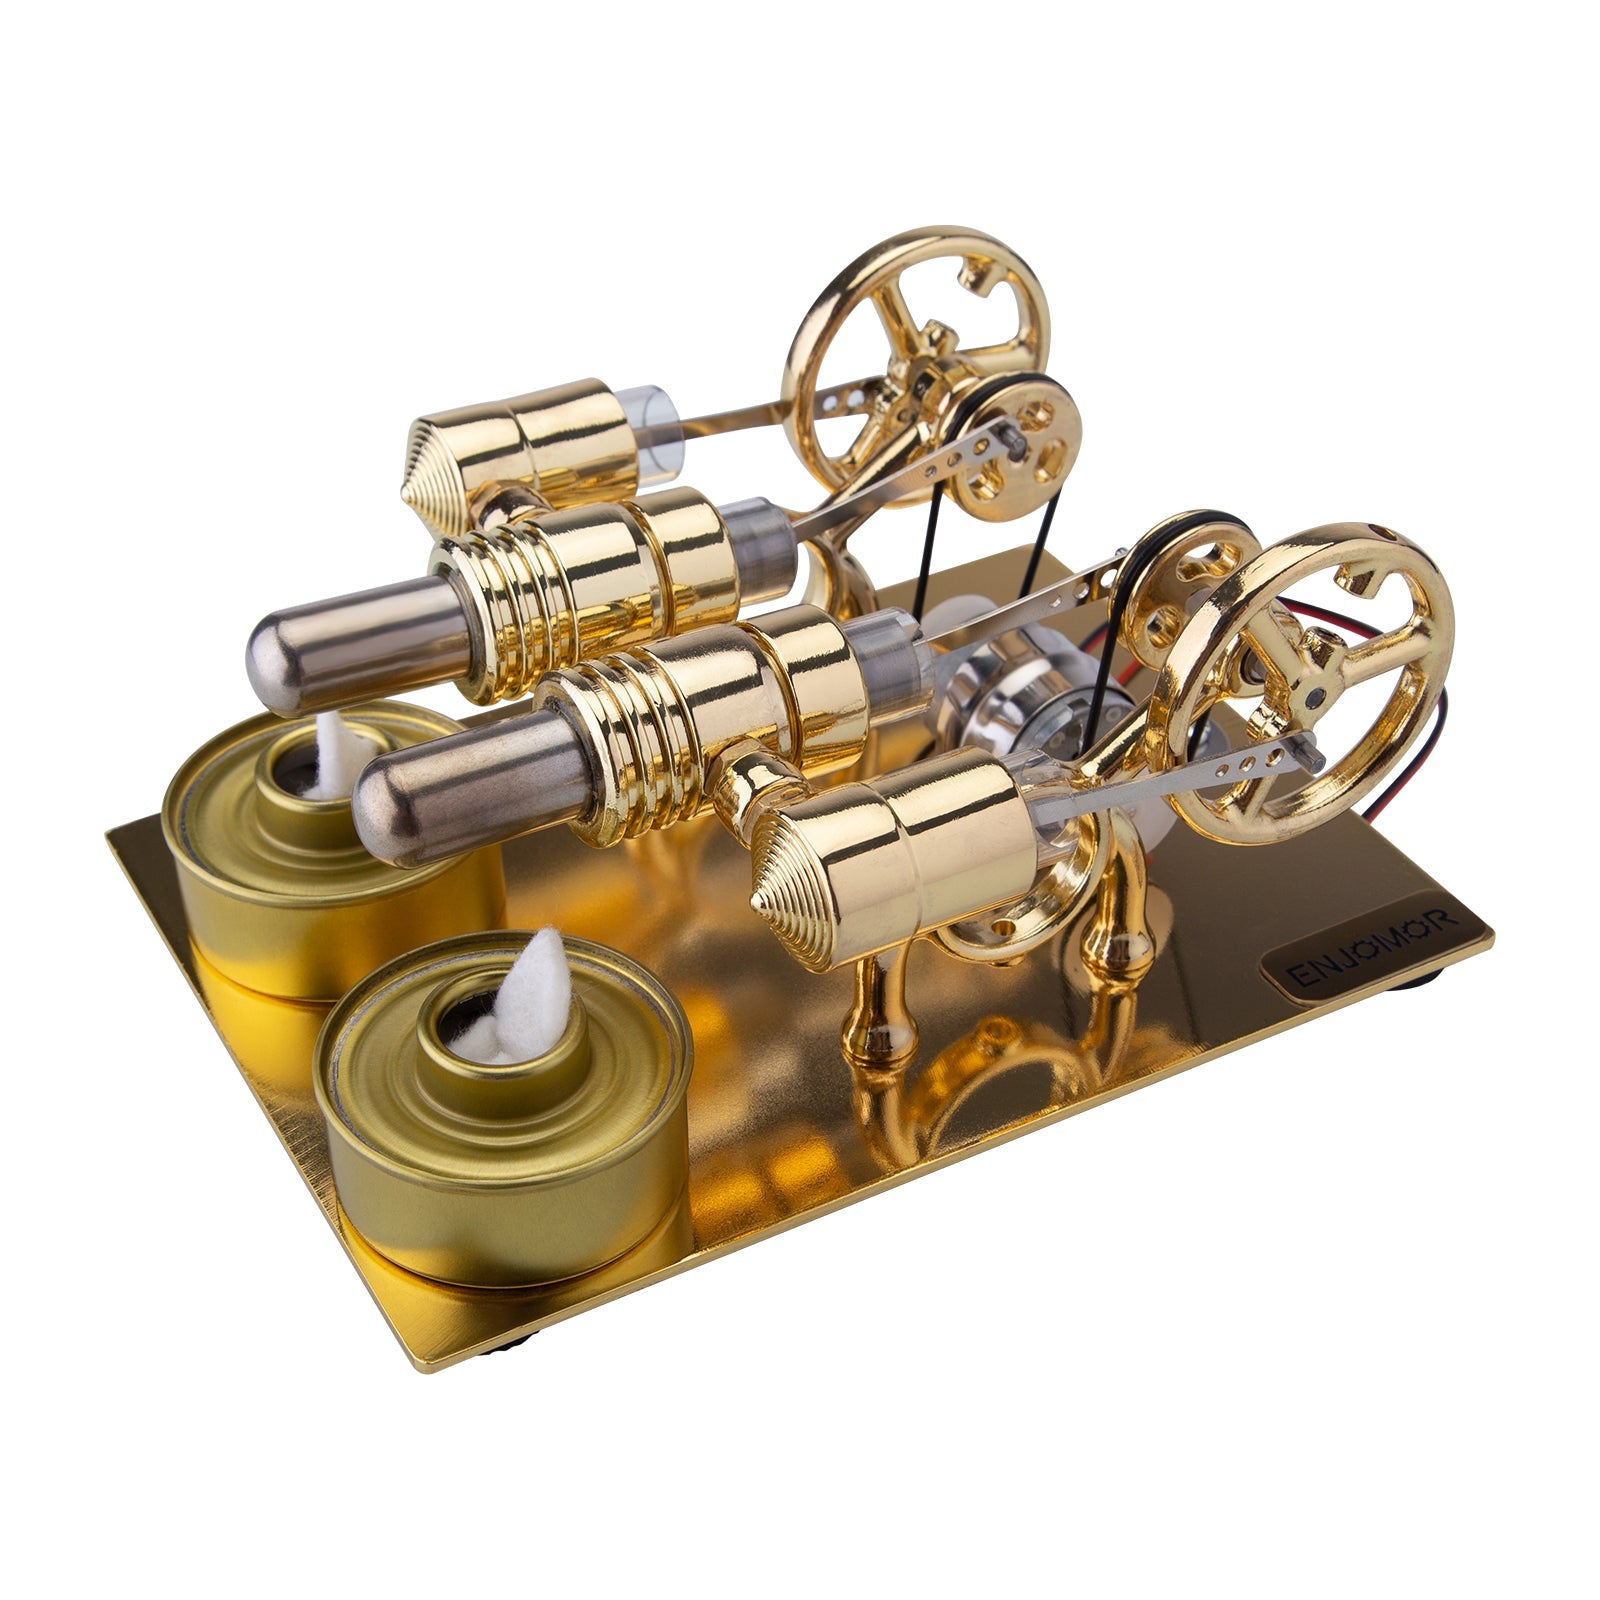 ENJOMOR Stirling Engine 4 Cylinder Hot Air Stirling Engine Generator External Combustion Engine Model enginediyshop